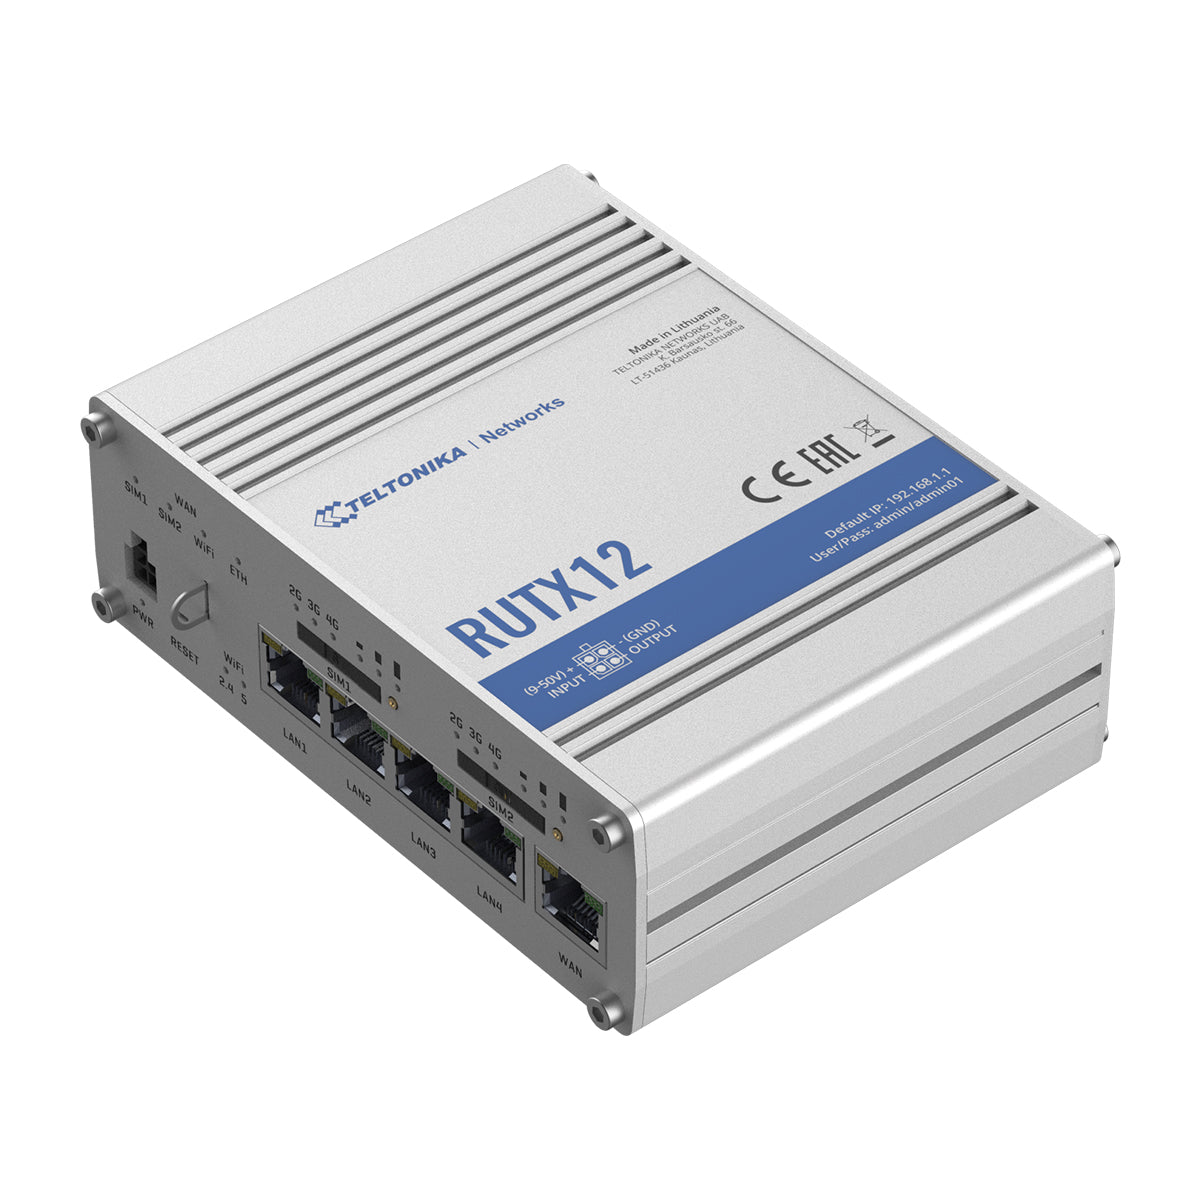 RUTX12, Ruteador 4G/LTE (Cat 6) hasta 300Mbps, Doble SIM, WAN Failover y Balanceo, WiFi ac wave-2, Bluetooth, 1xWAN, 4xLAN, RMS, GNSS, USB